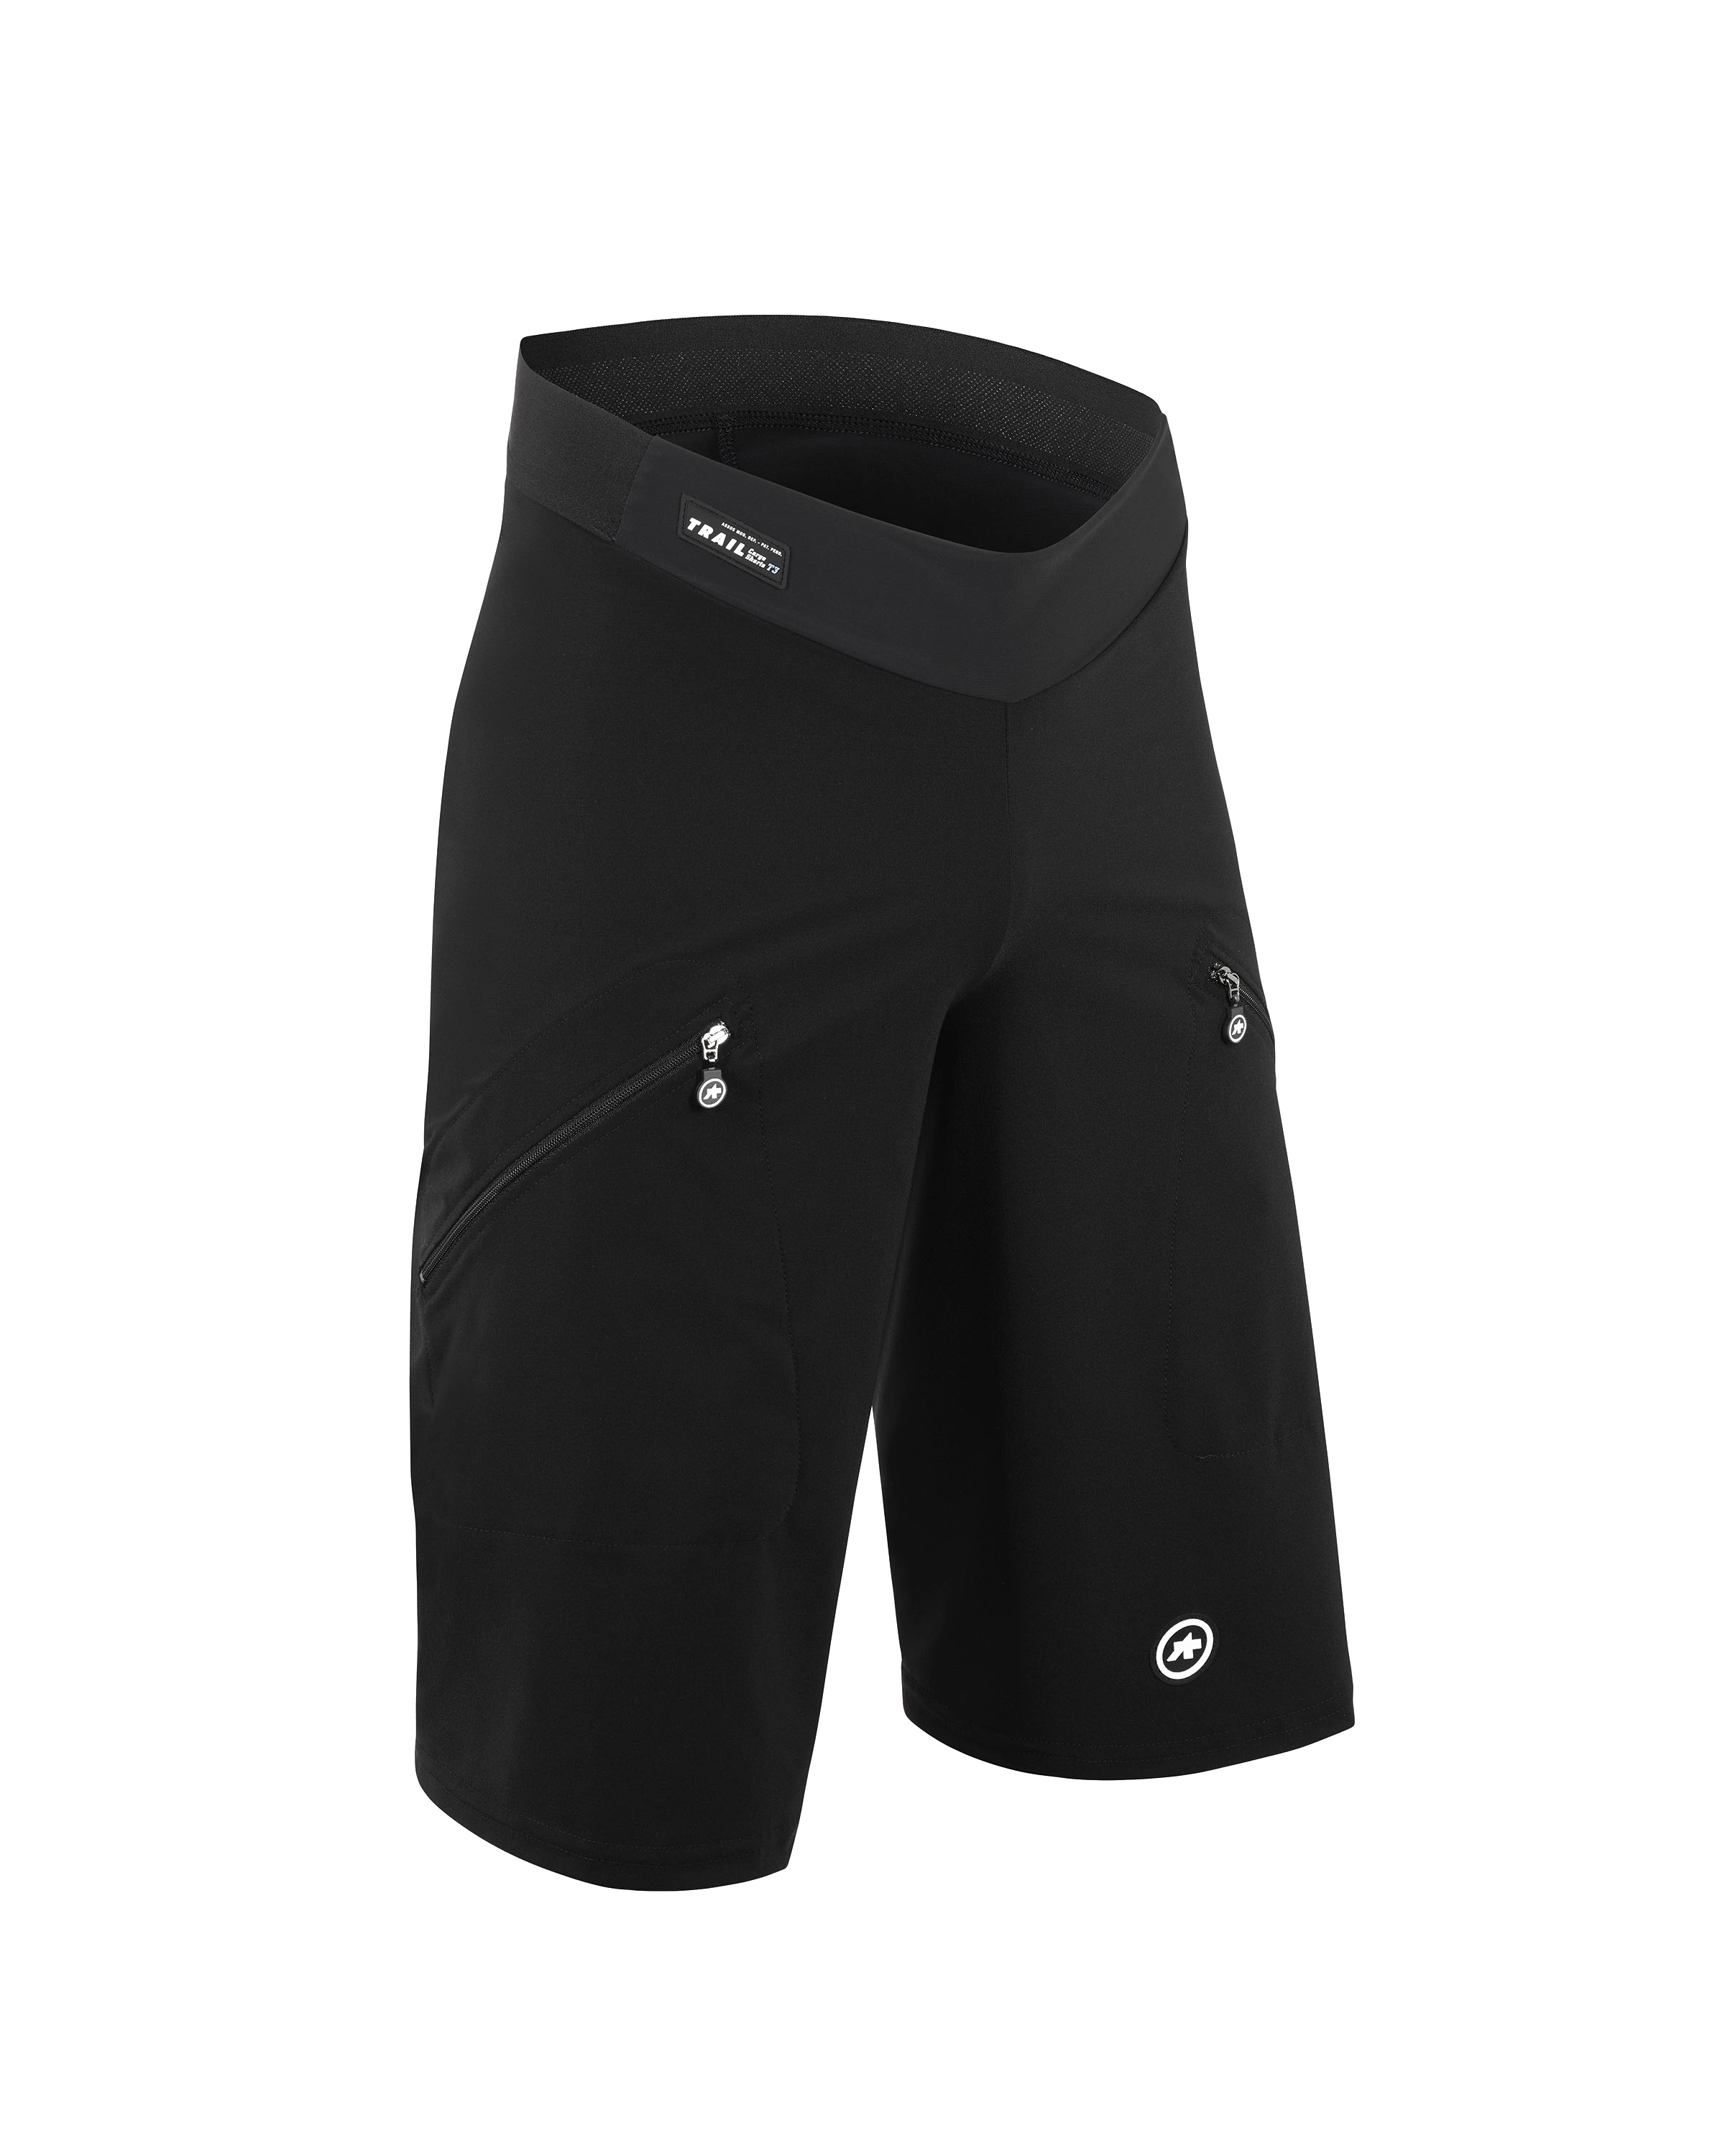 Велошорты ASSOS Trail Cargo Shorts T3 Black Series, мужские, черные, XL